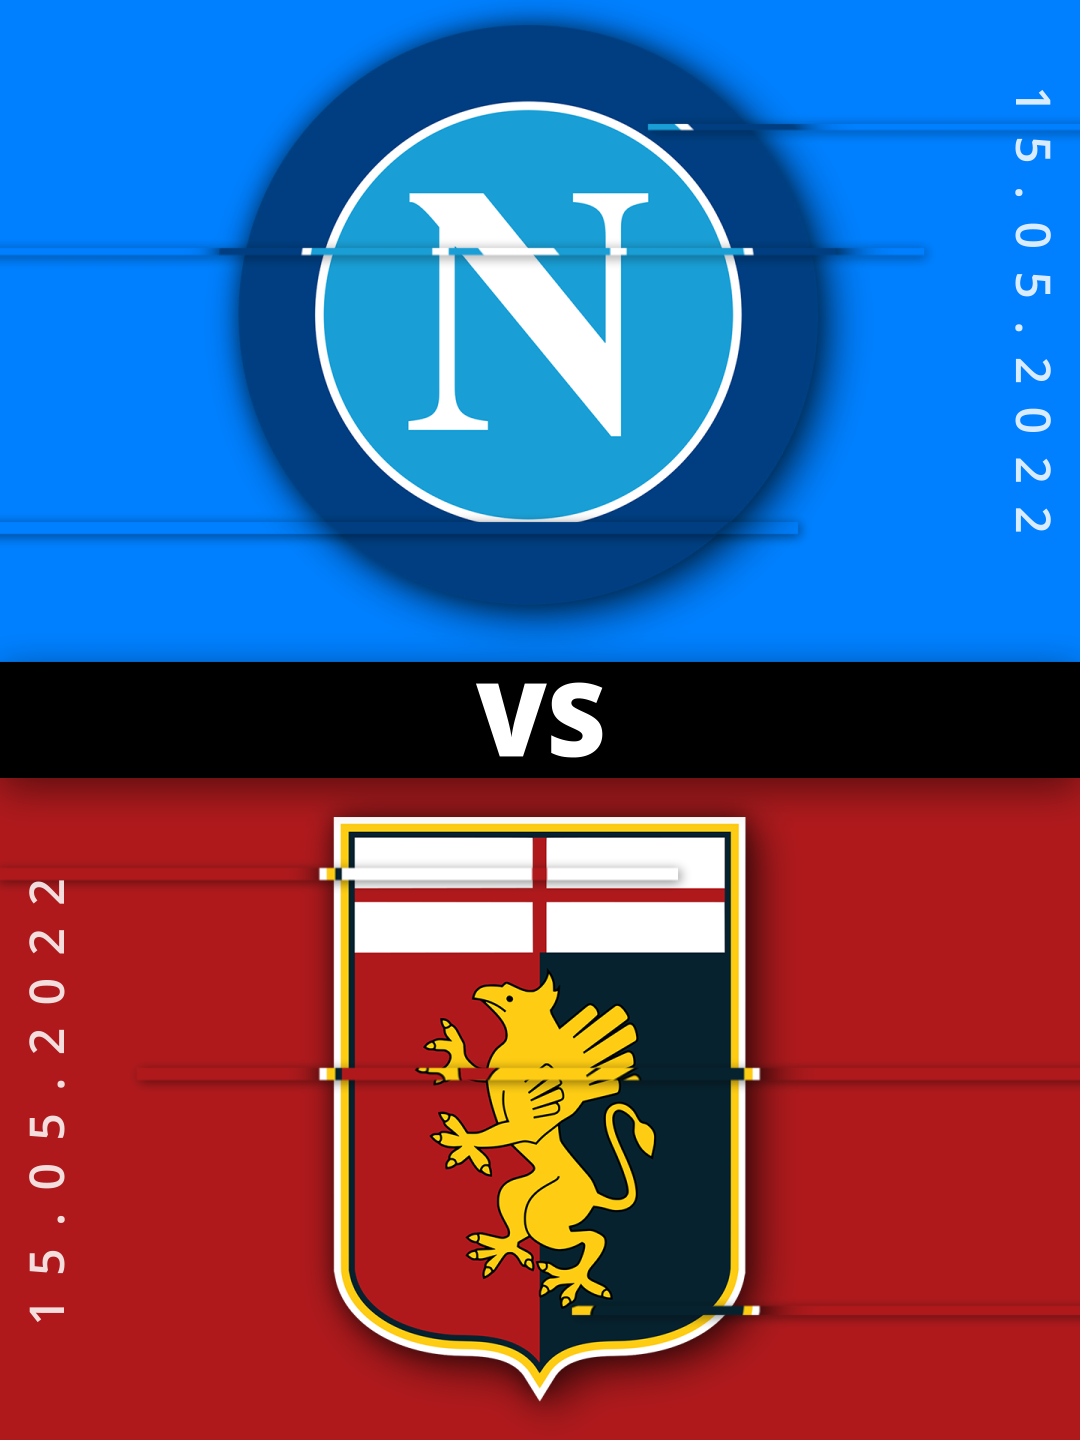 11721025 - Serie A - Genoa vs NapoliSearch